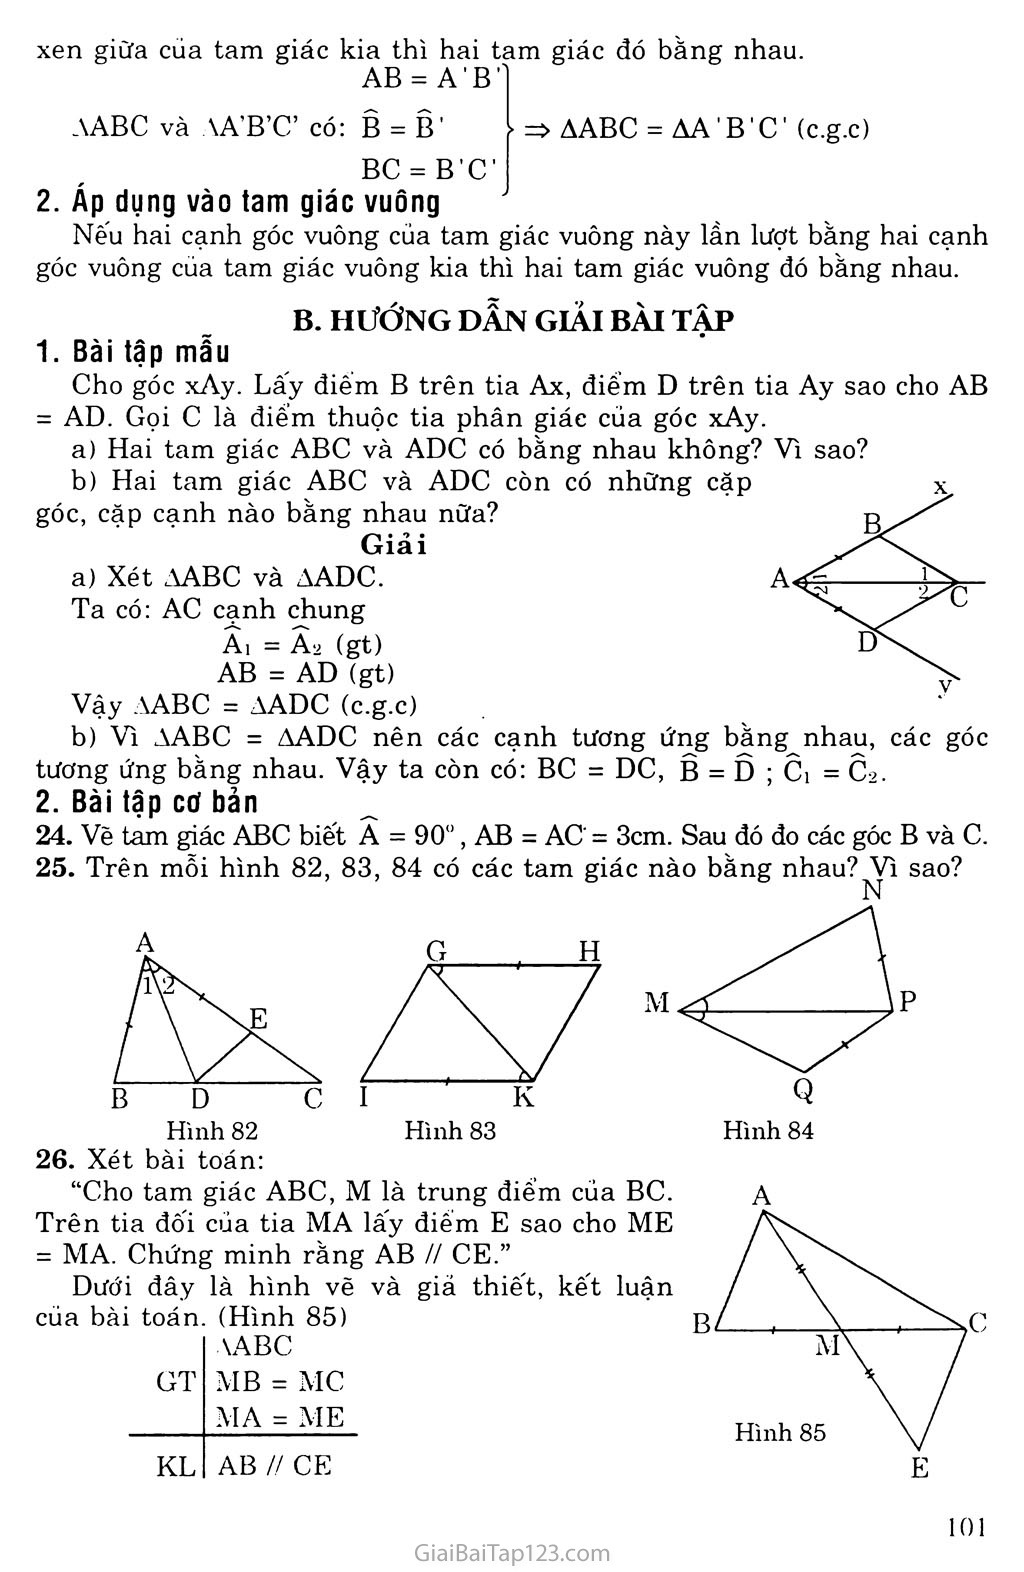 Bài 4. Trường hợp bằng nhau thứ hai của tam giác: cạnh - góc - canh (c. g. c) trang 2